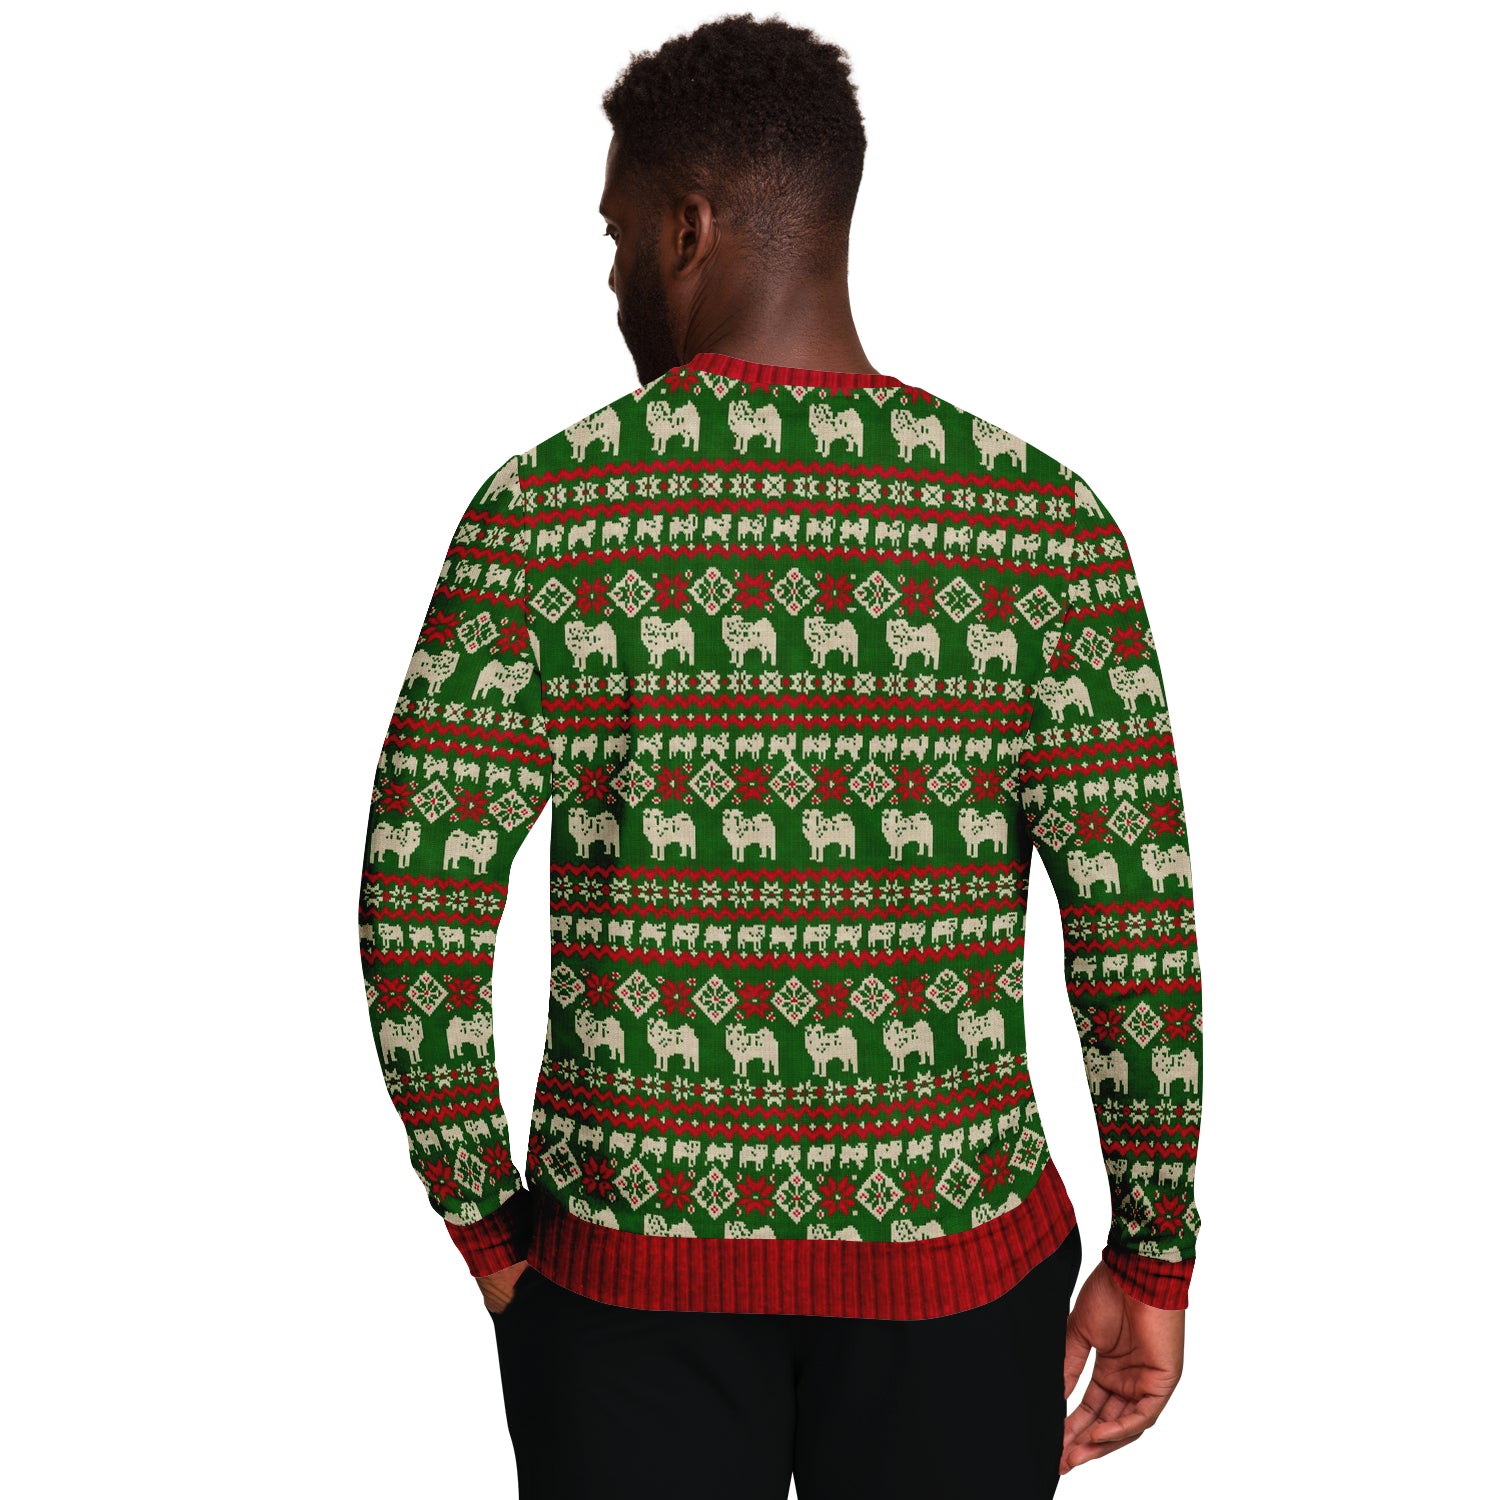 Ugly Christmas Sweatshirt | Bah HumPug Ugly Christmas Sweatshirt-TD Gift Solutions.com